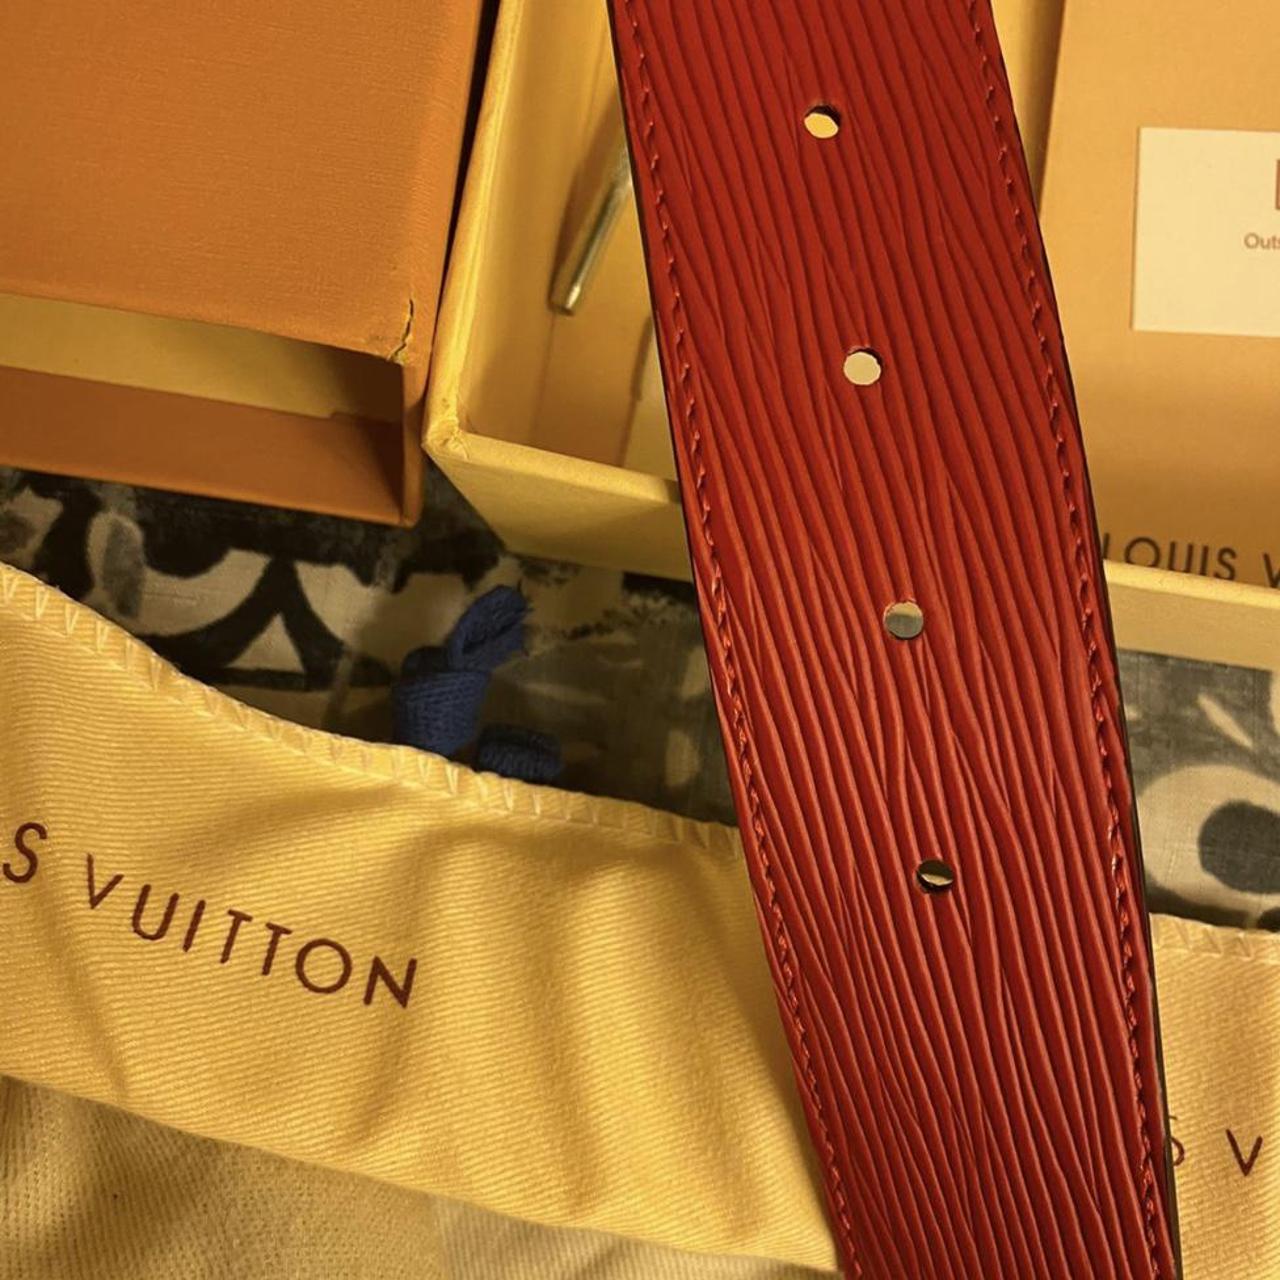 Mens / Womens Louis Vuitton Belt